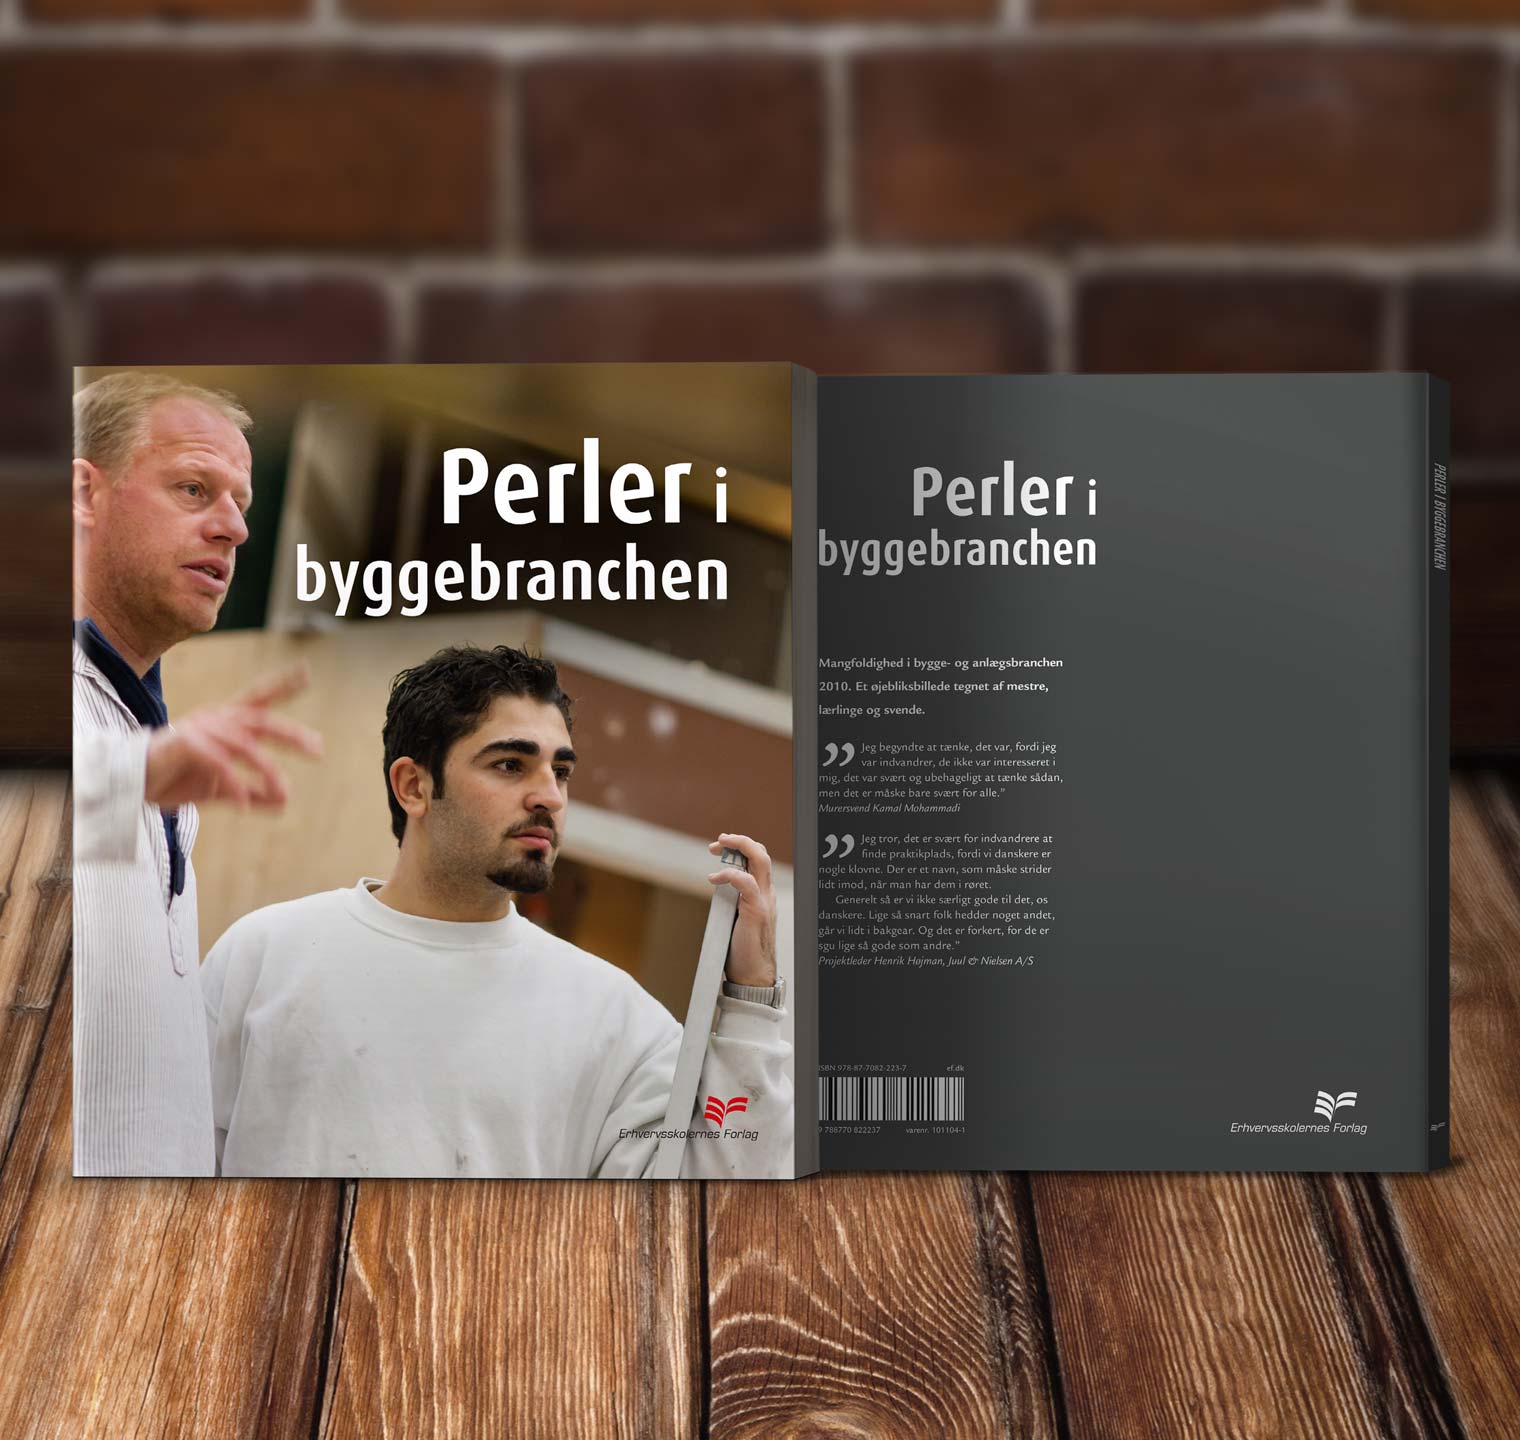 Perler i byggebranchen - Design og produktion: Omslag og indhold.